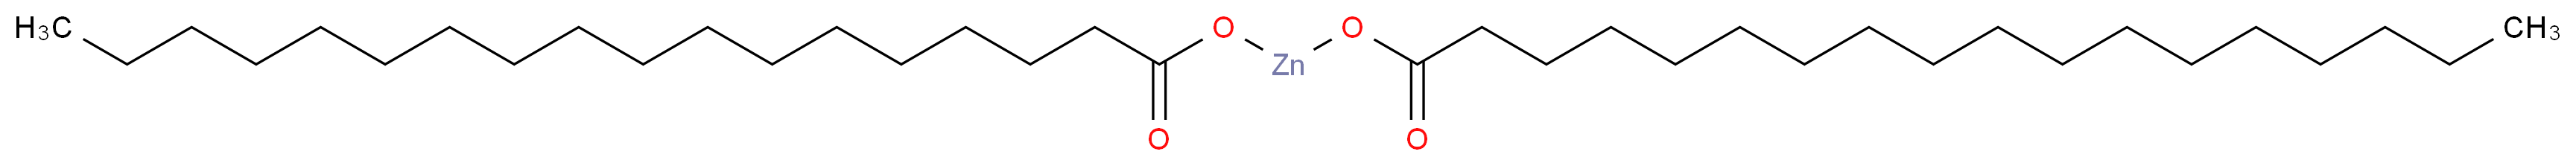 Zinc stearate_Molecular_structure_CAS_557-05-1)